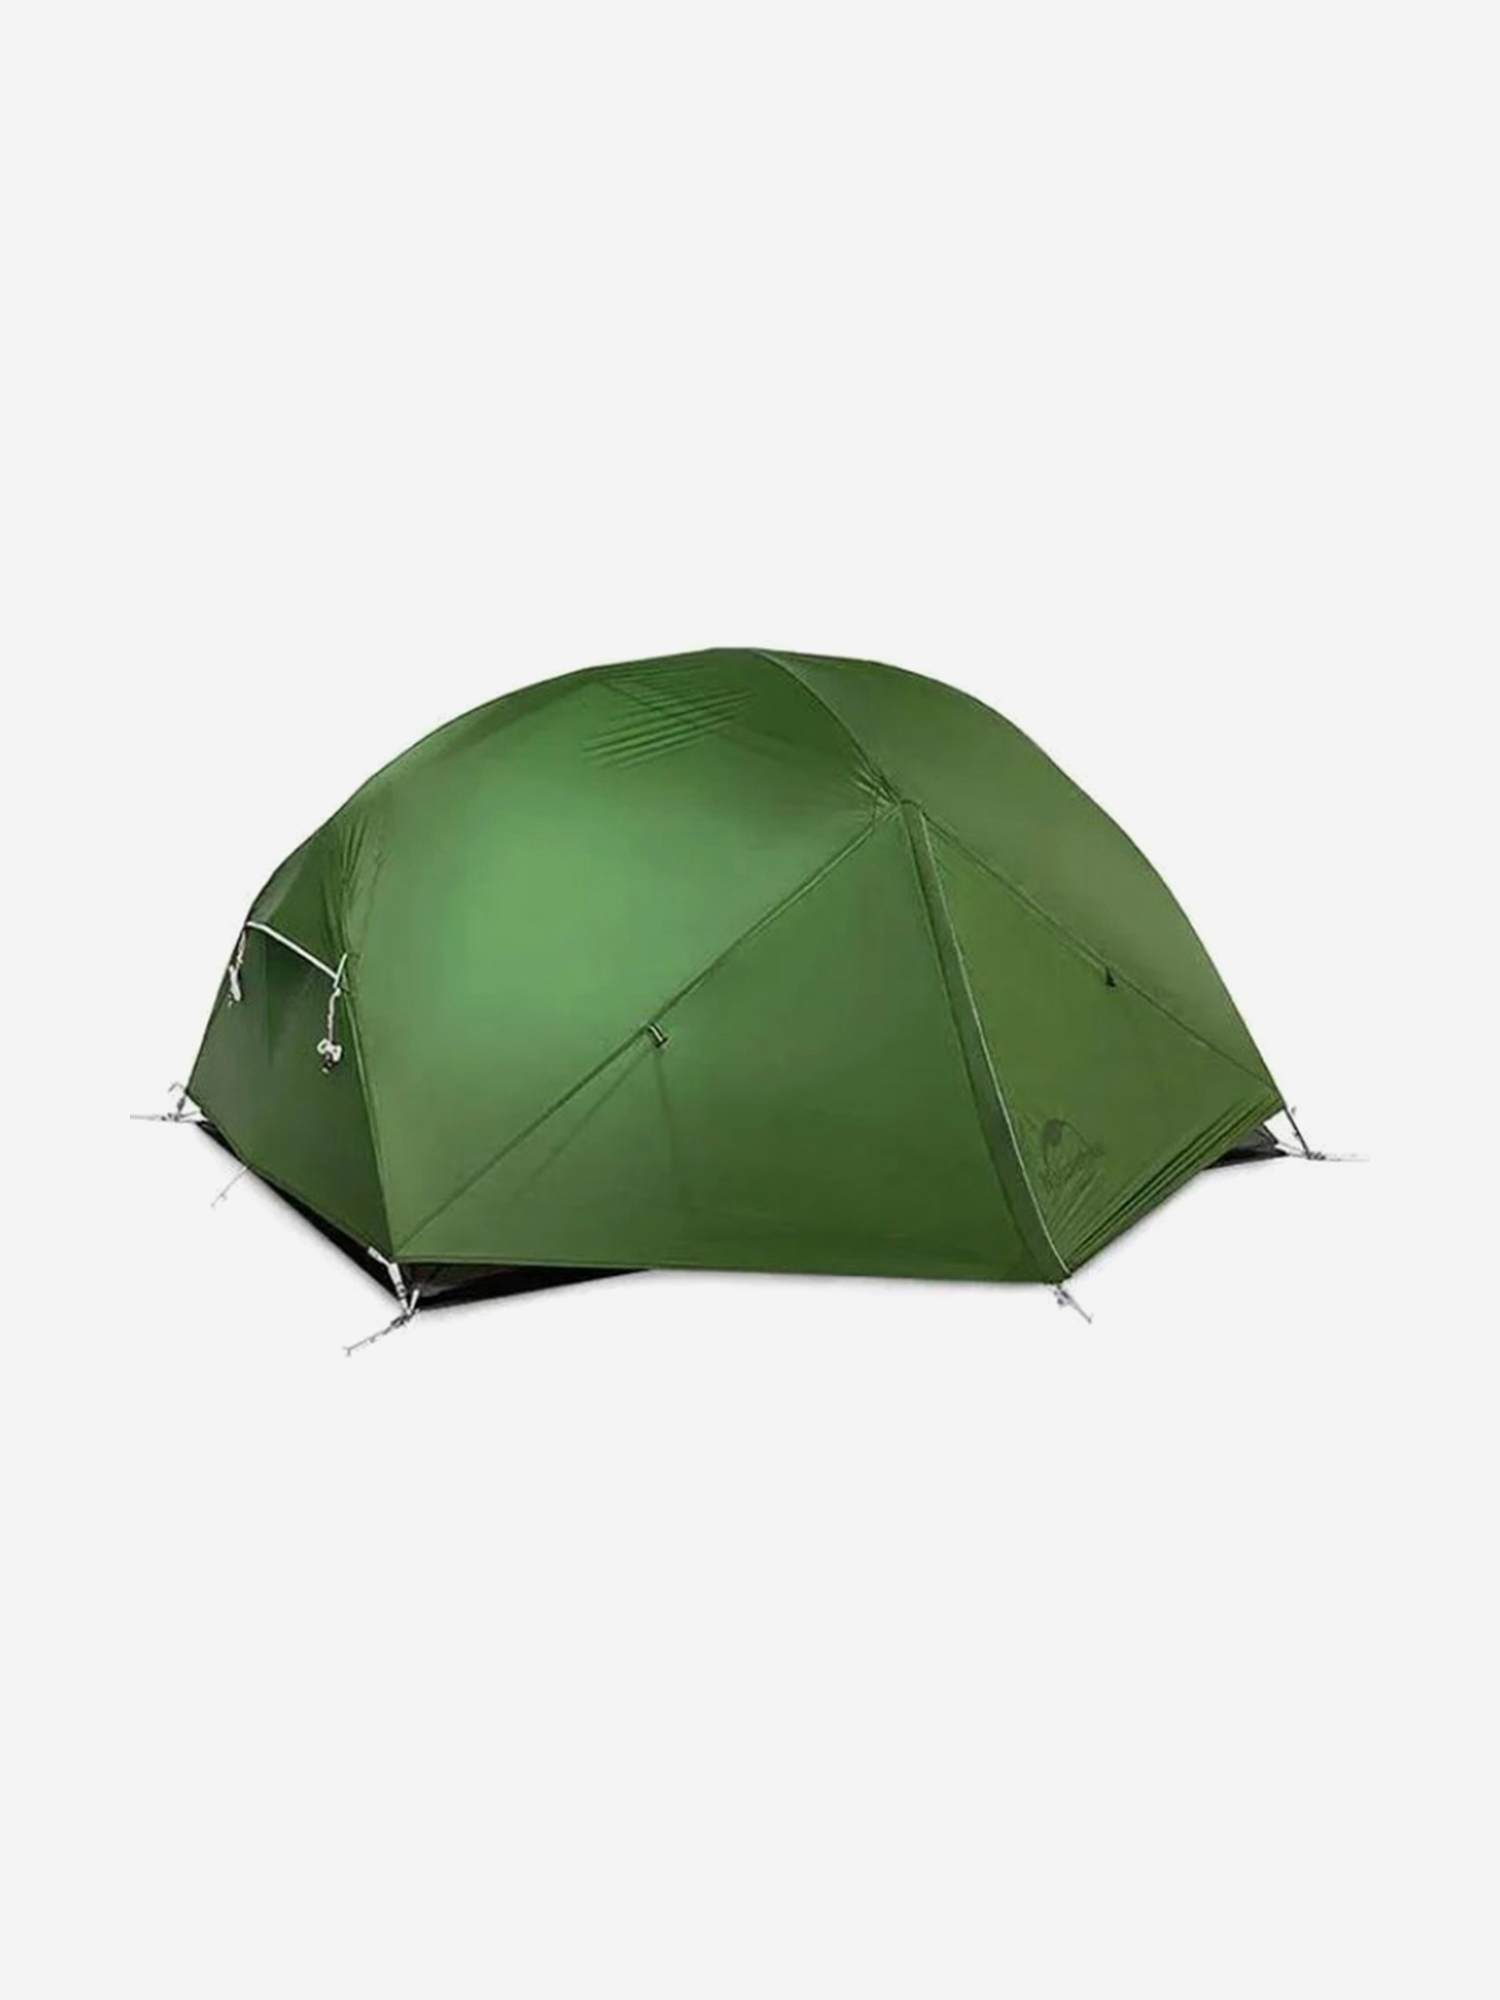 Палатка Naturehike Mongar 2-местная, алюминиевый каркас, зеленая, Зеленый палатка naturehike p plus 4 местная алюминиевый каркас зеленый зеленый